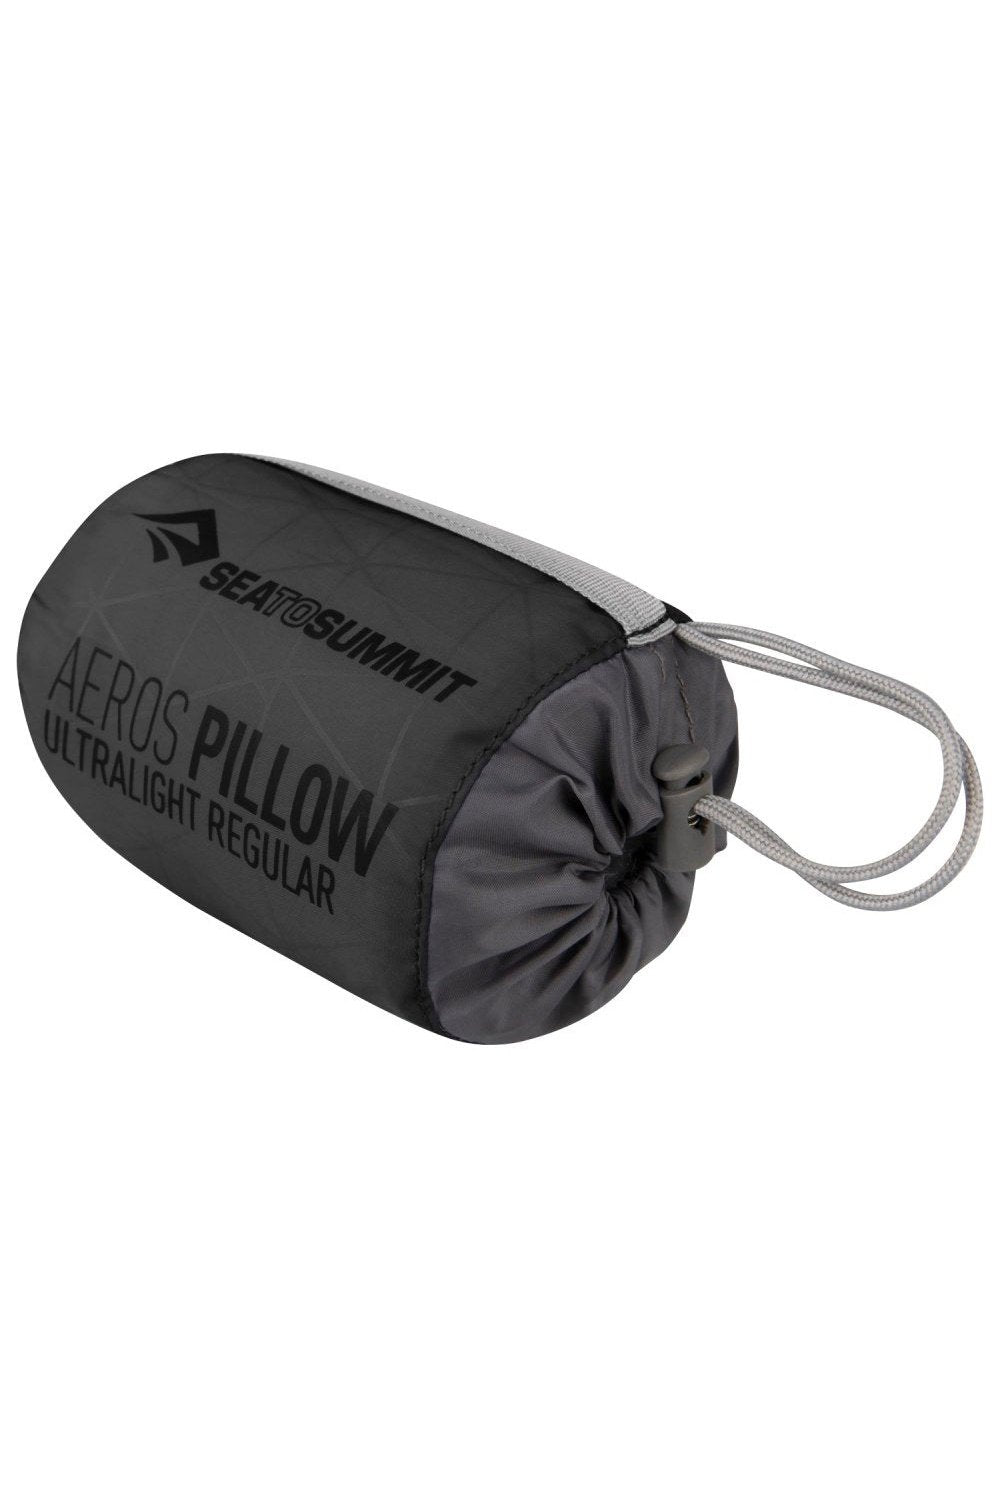 Sea to Summit Aeros Ultralight Pillow - Regular Sea to Summit Rugged Ram Outdoors